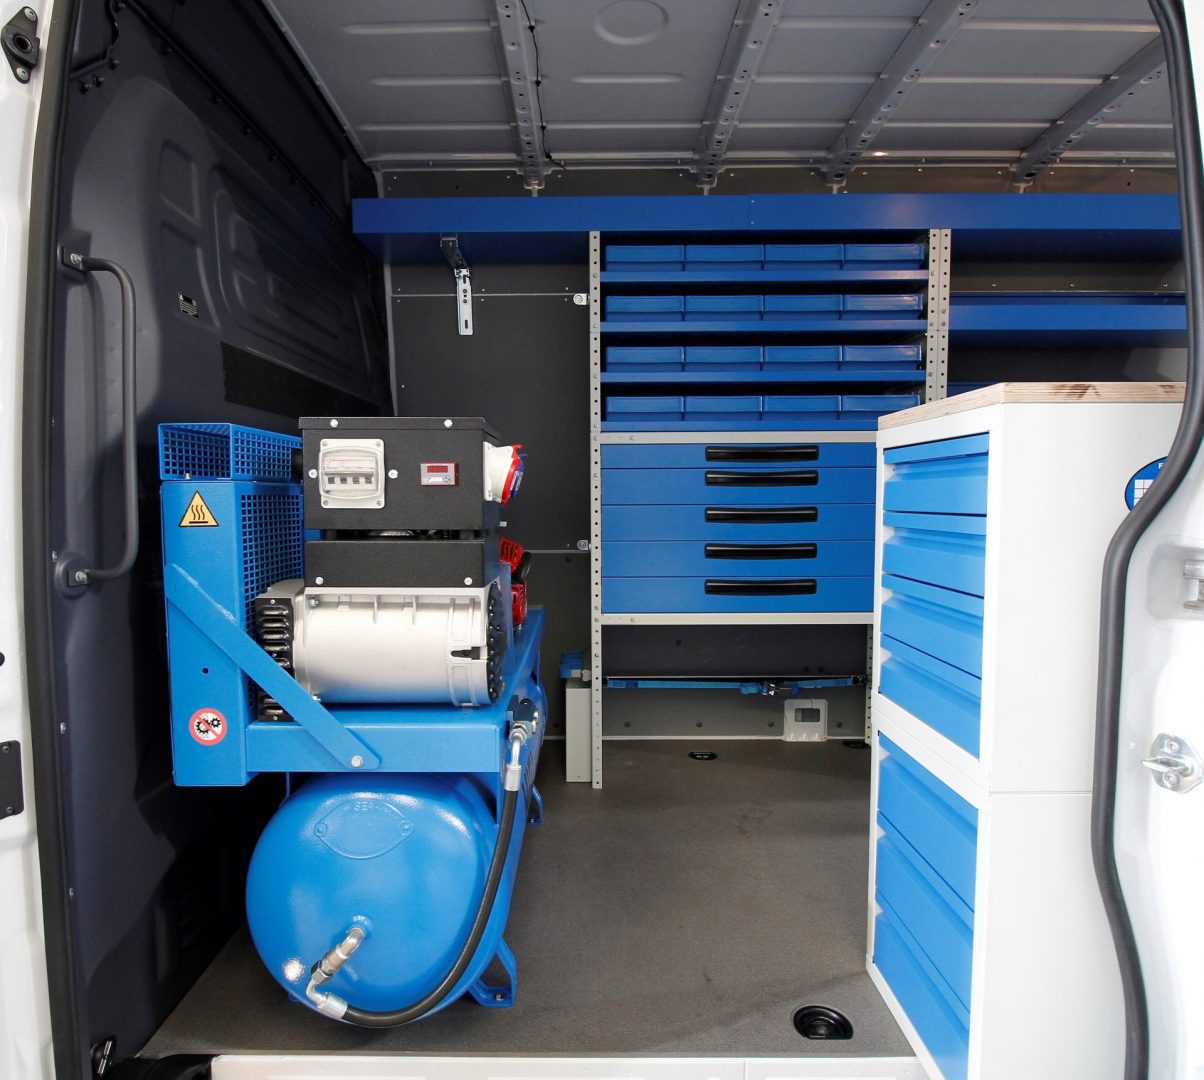 migi compressor generator in van with racking drawers